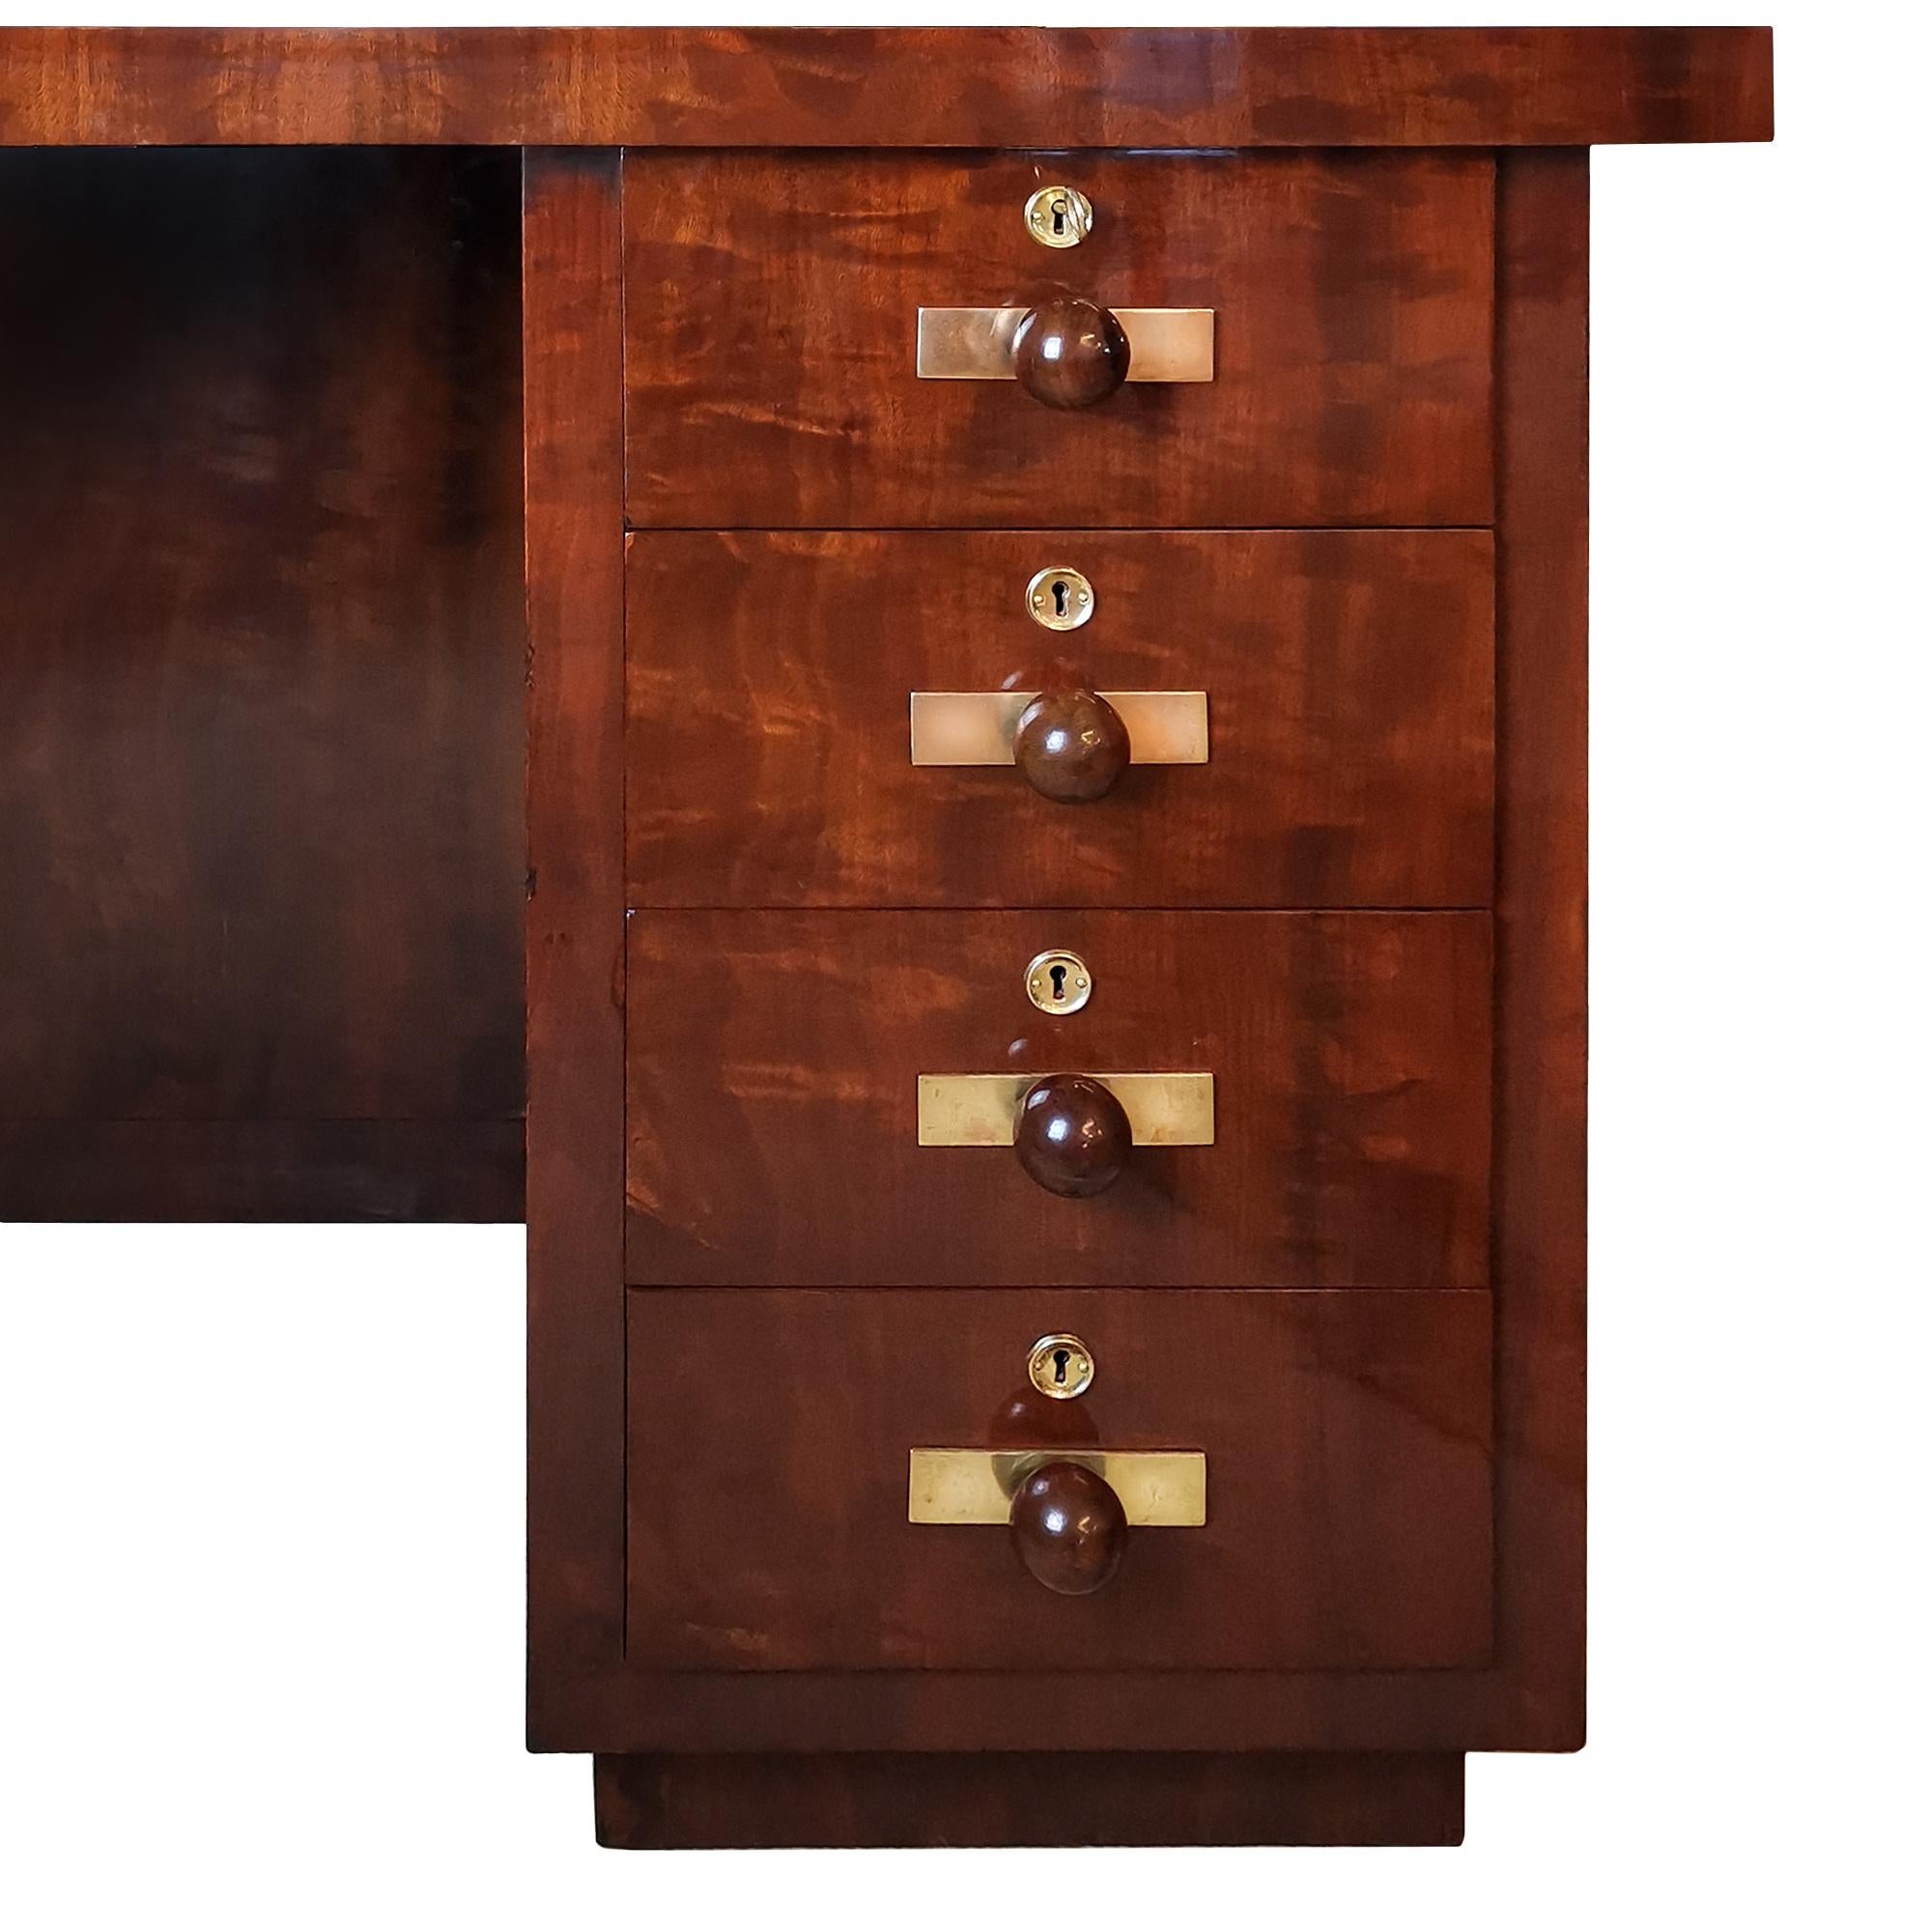 Kubistischer Art-Deco-Schreibtisch mit geflammtem Mahagoni-Furnier. Sechs Schubladen und eine Türöffnung auf der Vorderseite, eine Nische auf einer Seite. Griffe aus Mahagoni, polierte Messingbeschläge. Französisch polnisch. Sehr hohe